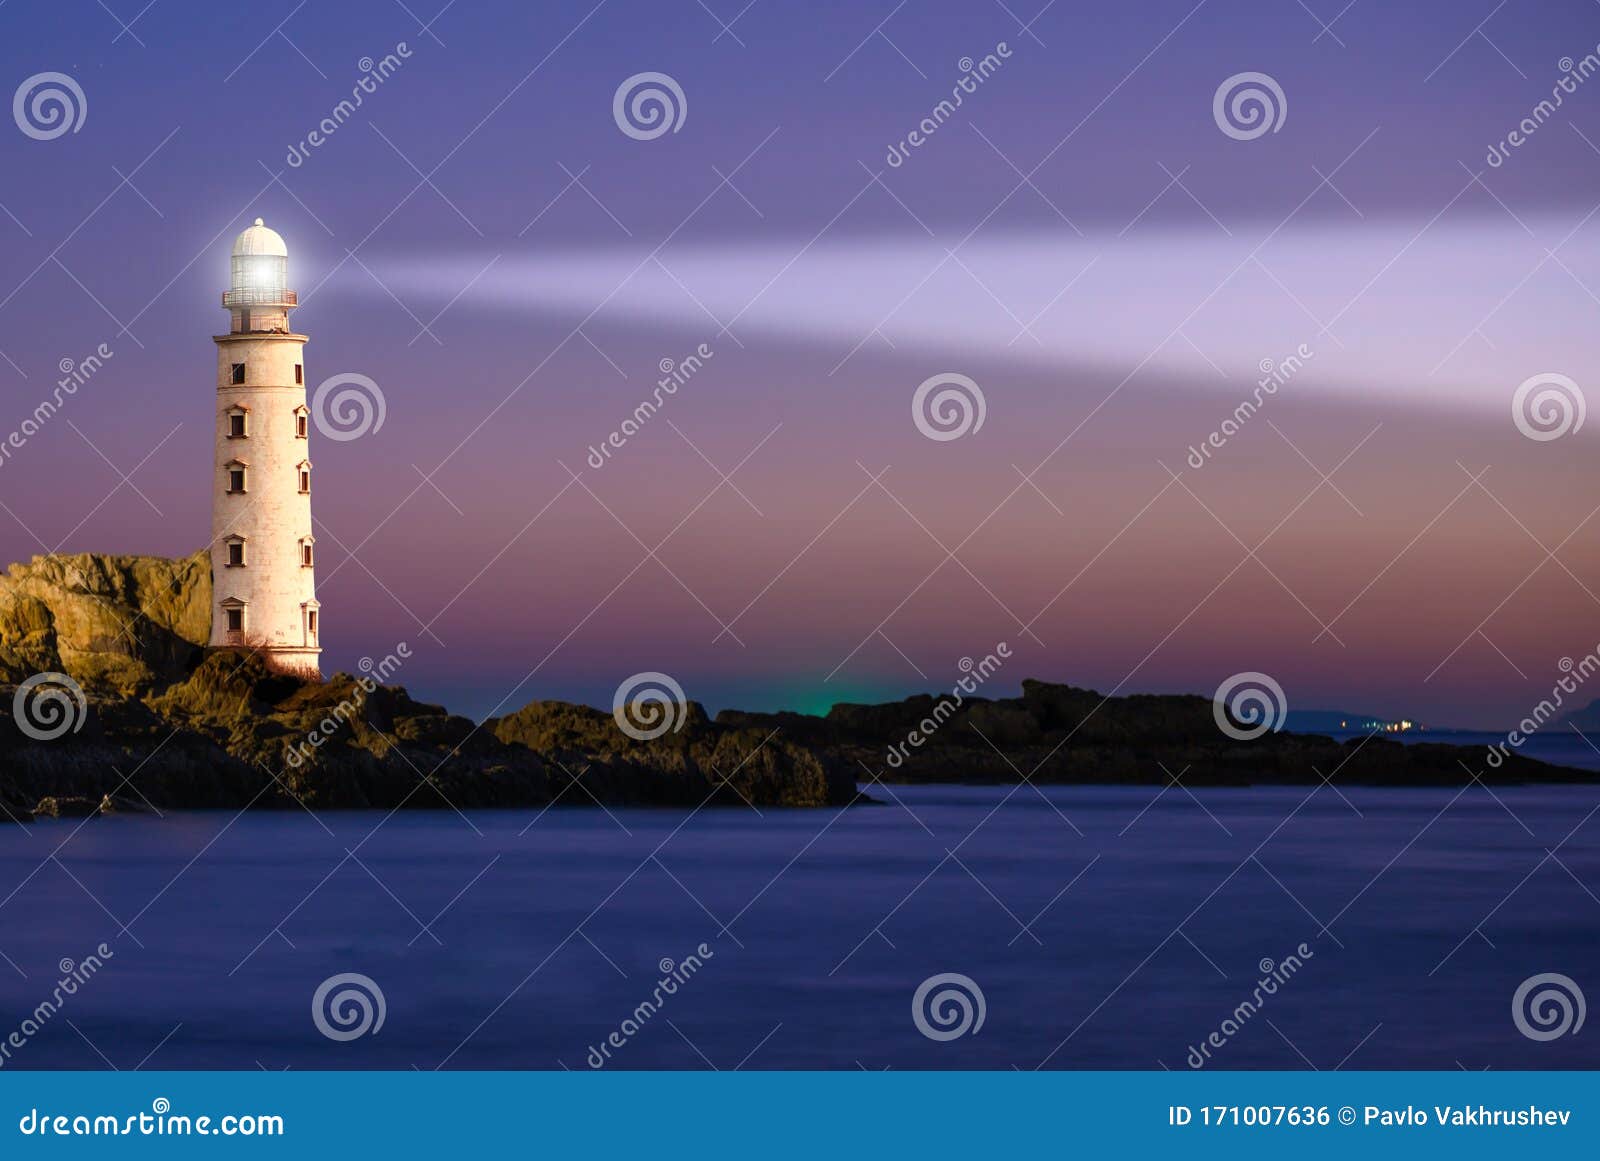 lighthouse on sea sunset